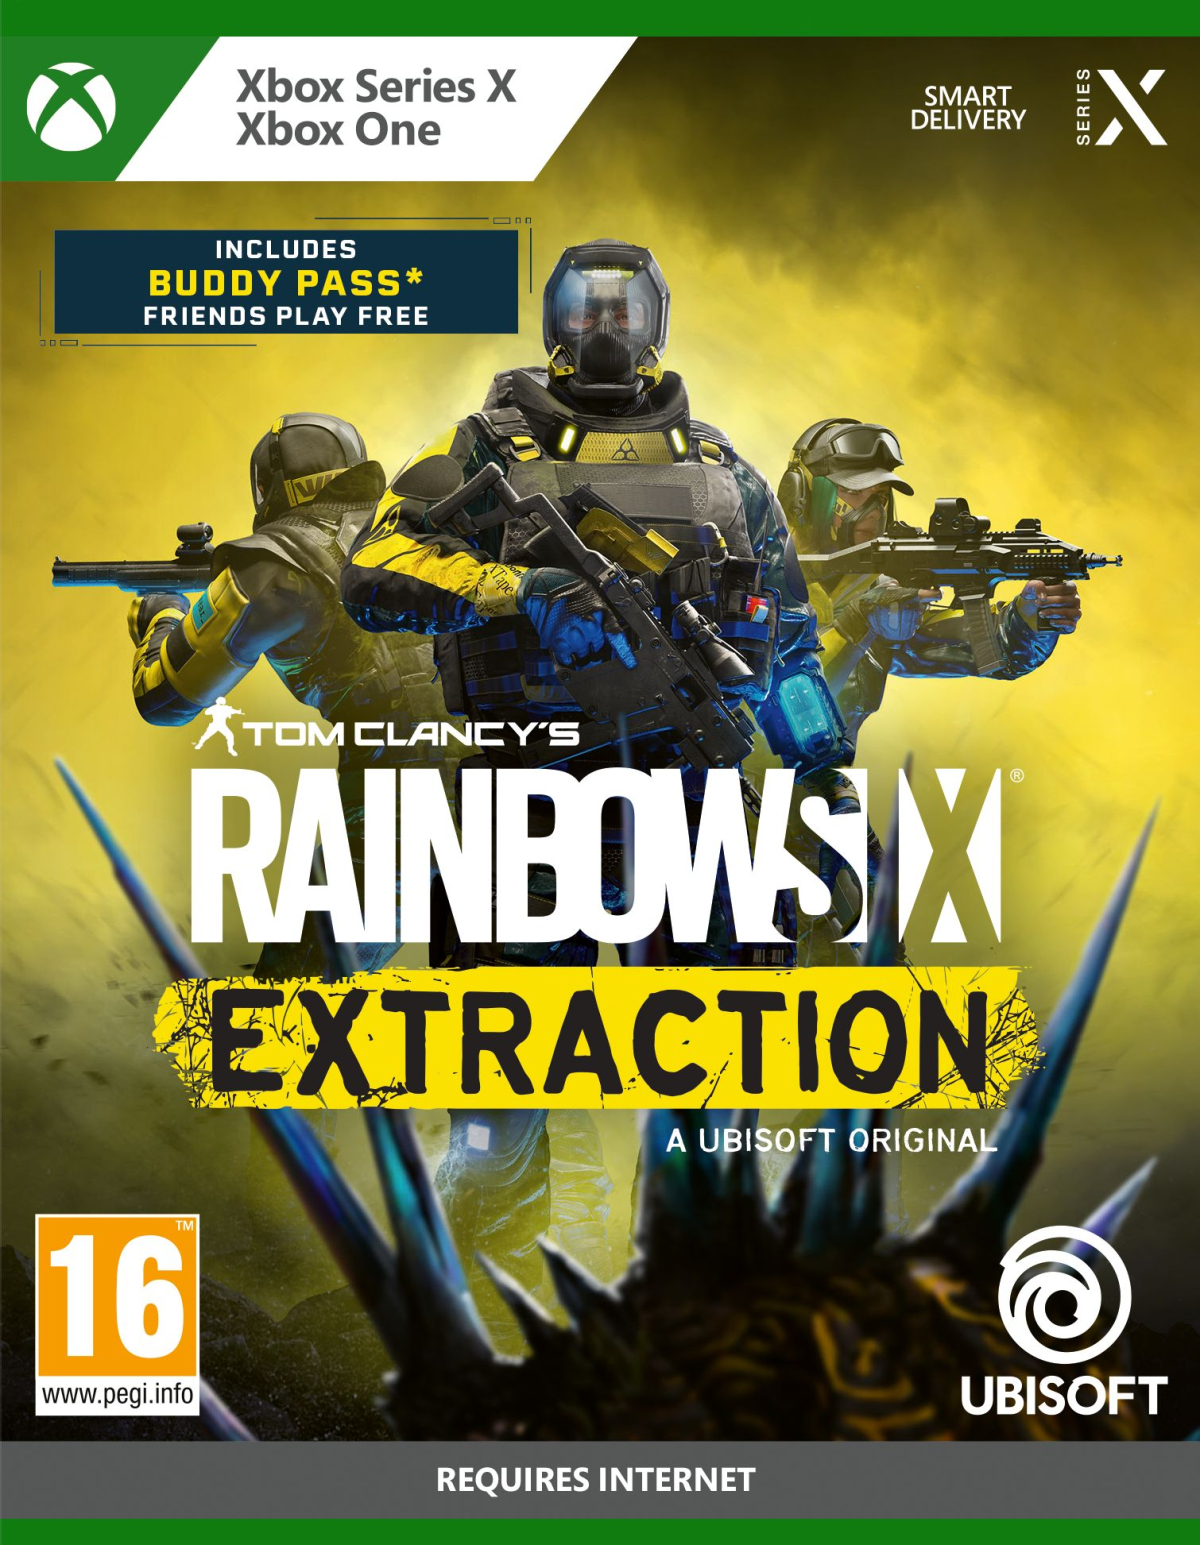 XBOXOne/SeriesX Rainbow Six Extraction